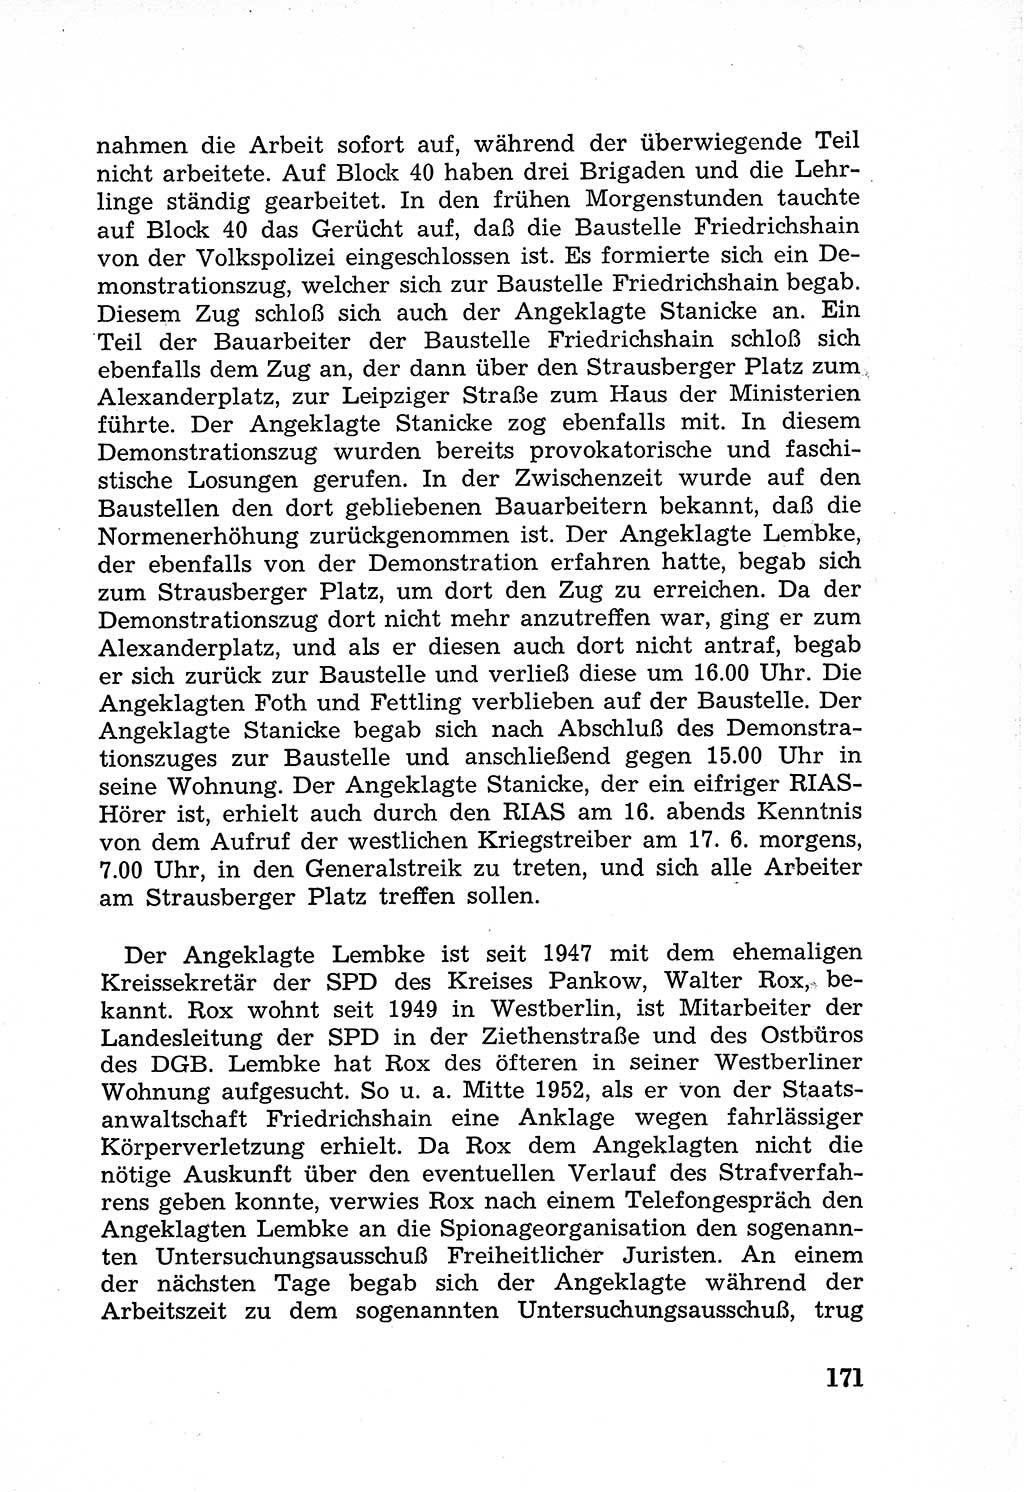 Rechtsstaat in zweierlei Hinsicht, Untersuchungsausschuß freiheitlicher Juristen (UfJ) [Bundesrepublik Deutschland (BRD)] 1956, Seite 171 (R.-St. UfJ BRD 1956, S. 171)